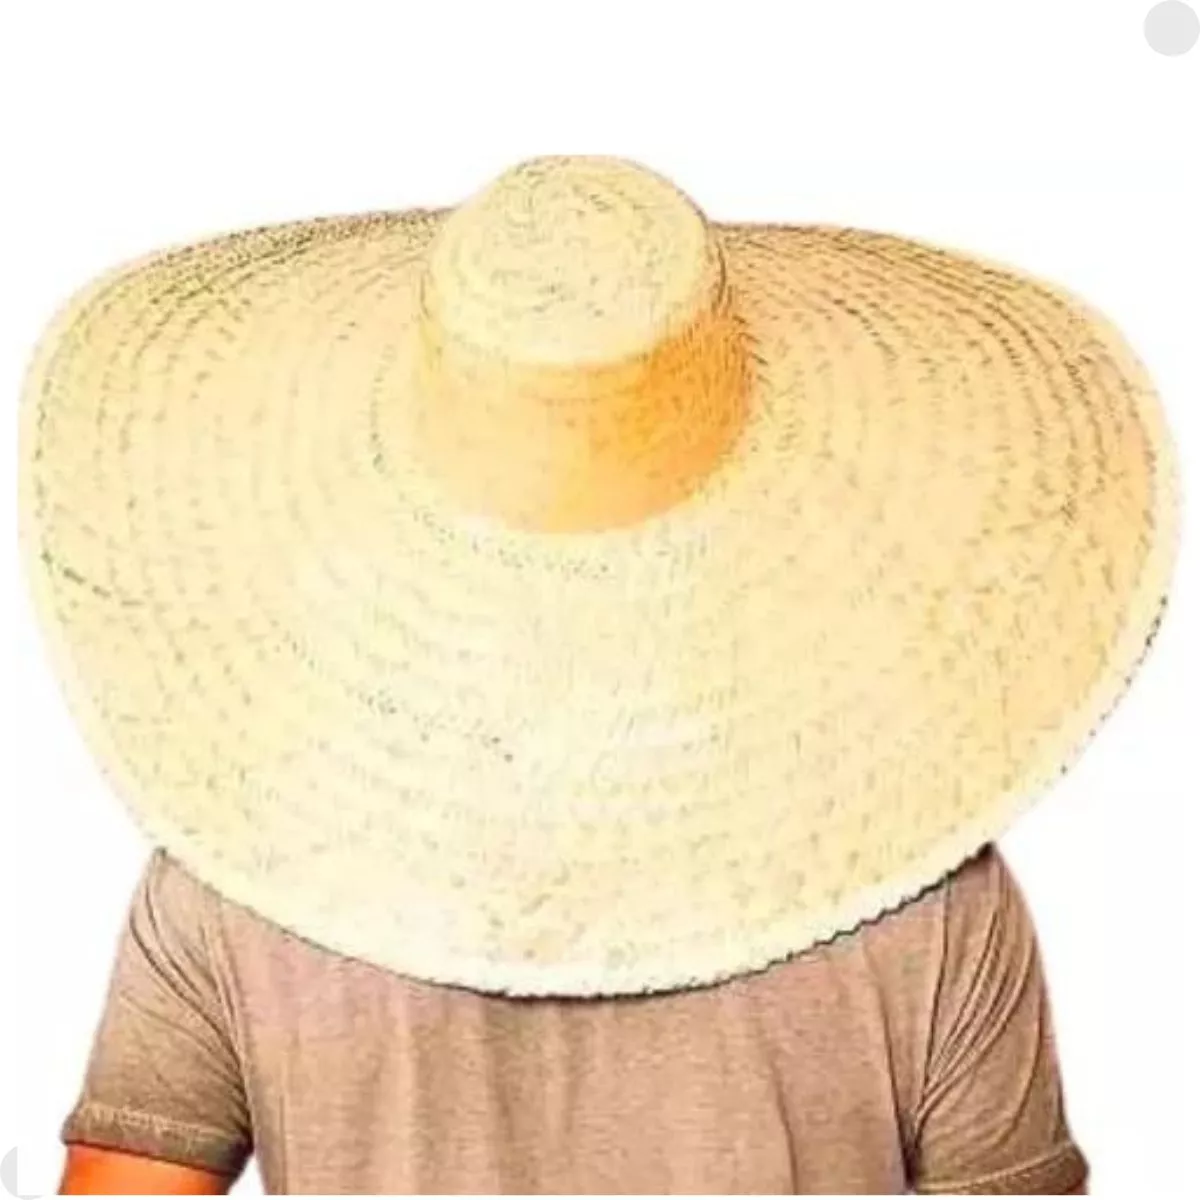 Primeira imagem para pesquisa de chapeu mexicano